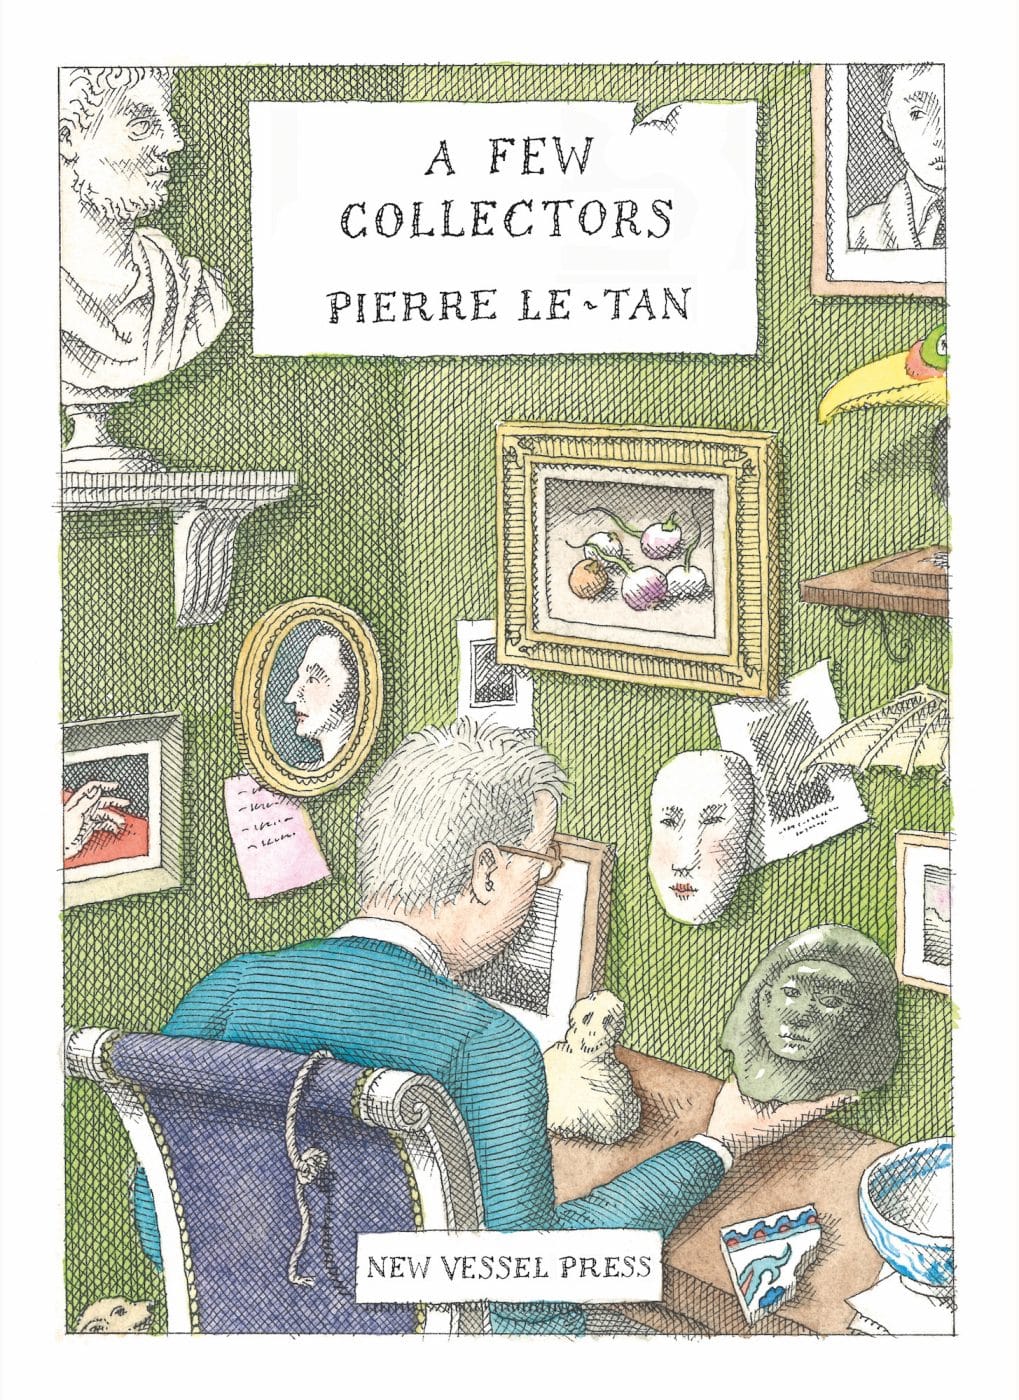 Couverture de « A Few Collectors » (« Quelques collectionneurs ») de Pierre Le-Tan